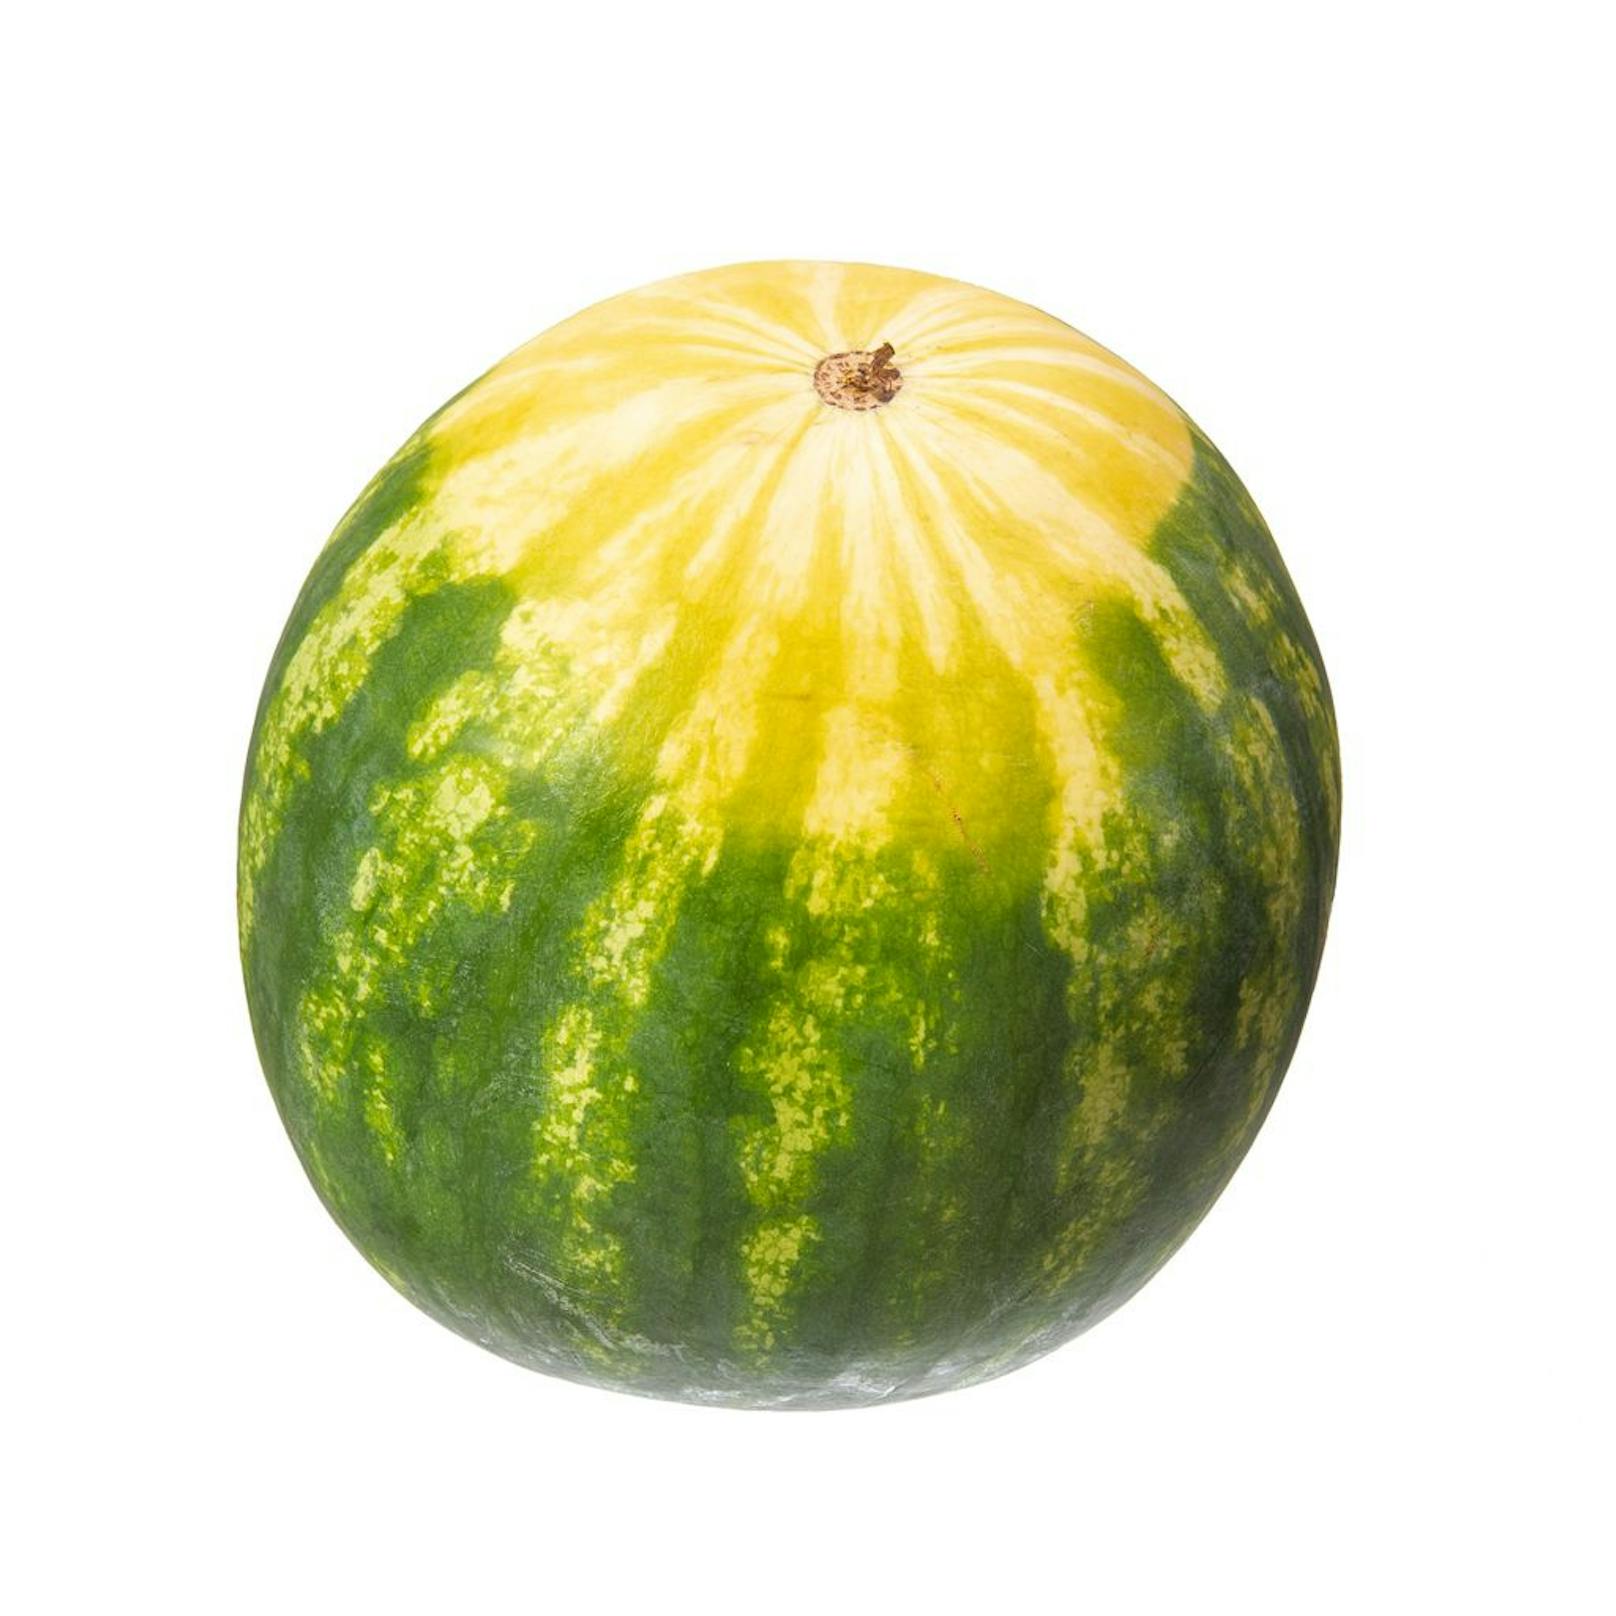 3. Auf den Feldfleck achten: Die Unterseite der Wassermelone sollte einen gelben Fleck haben. An dieser Stellelag die Frucht auf dem Boden und ist in der Sonne gereift.